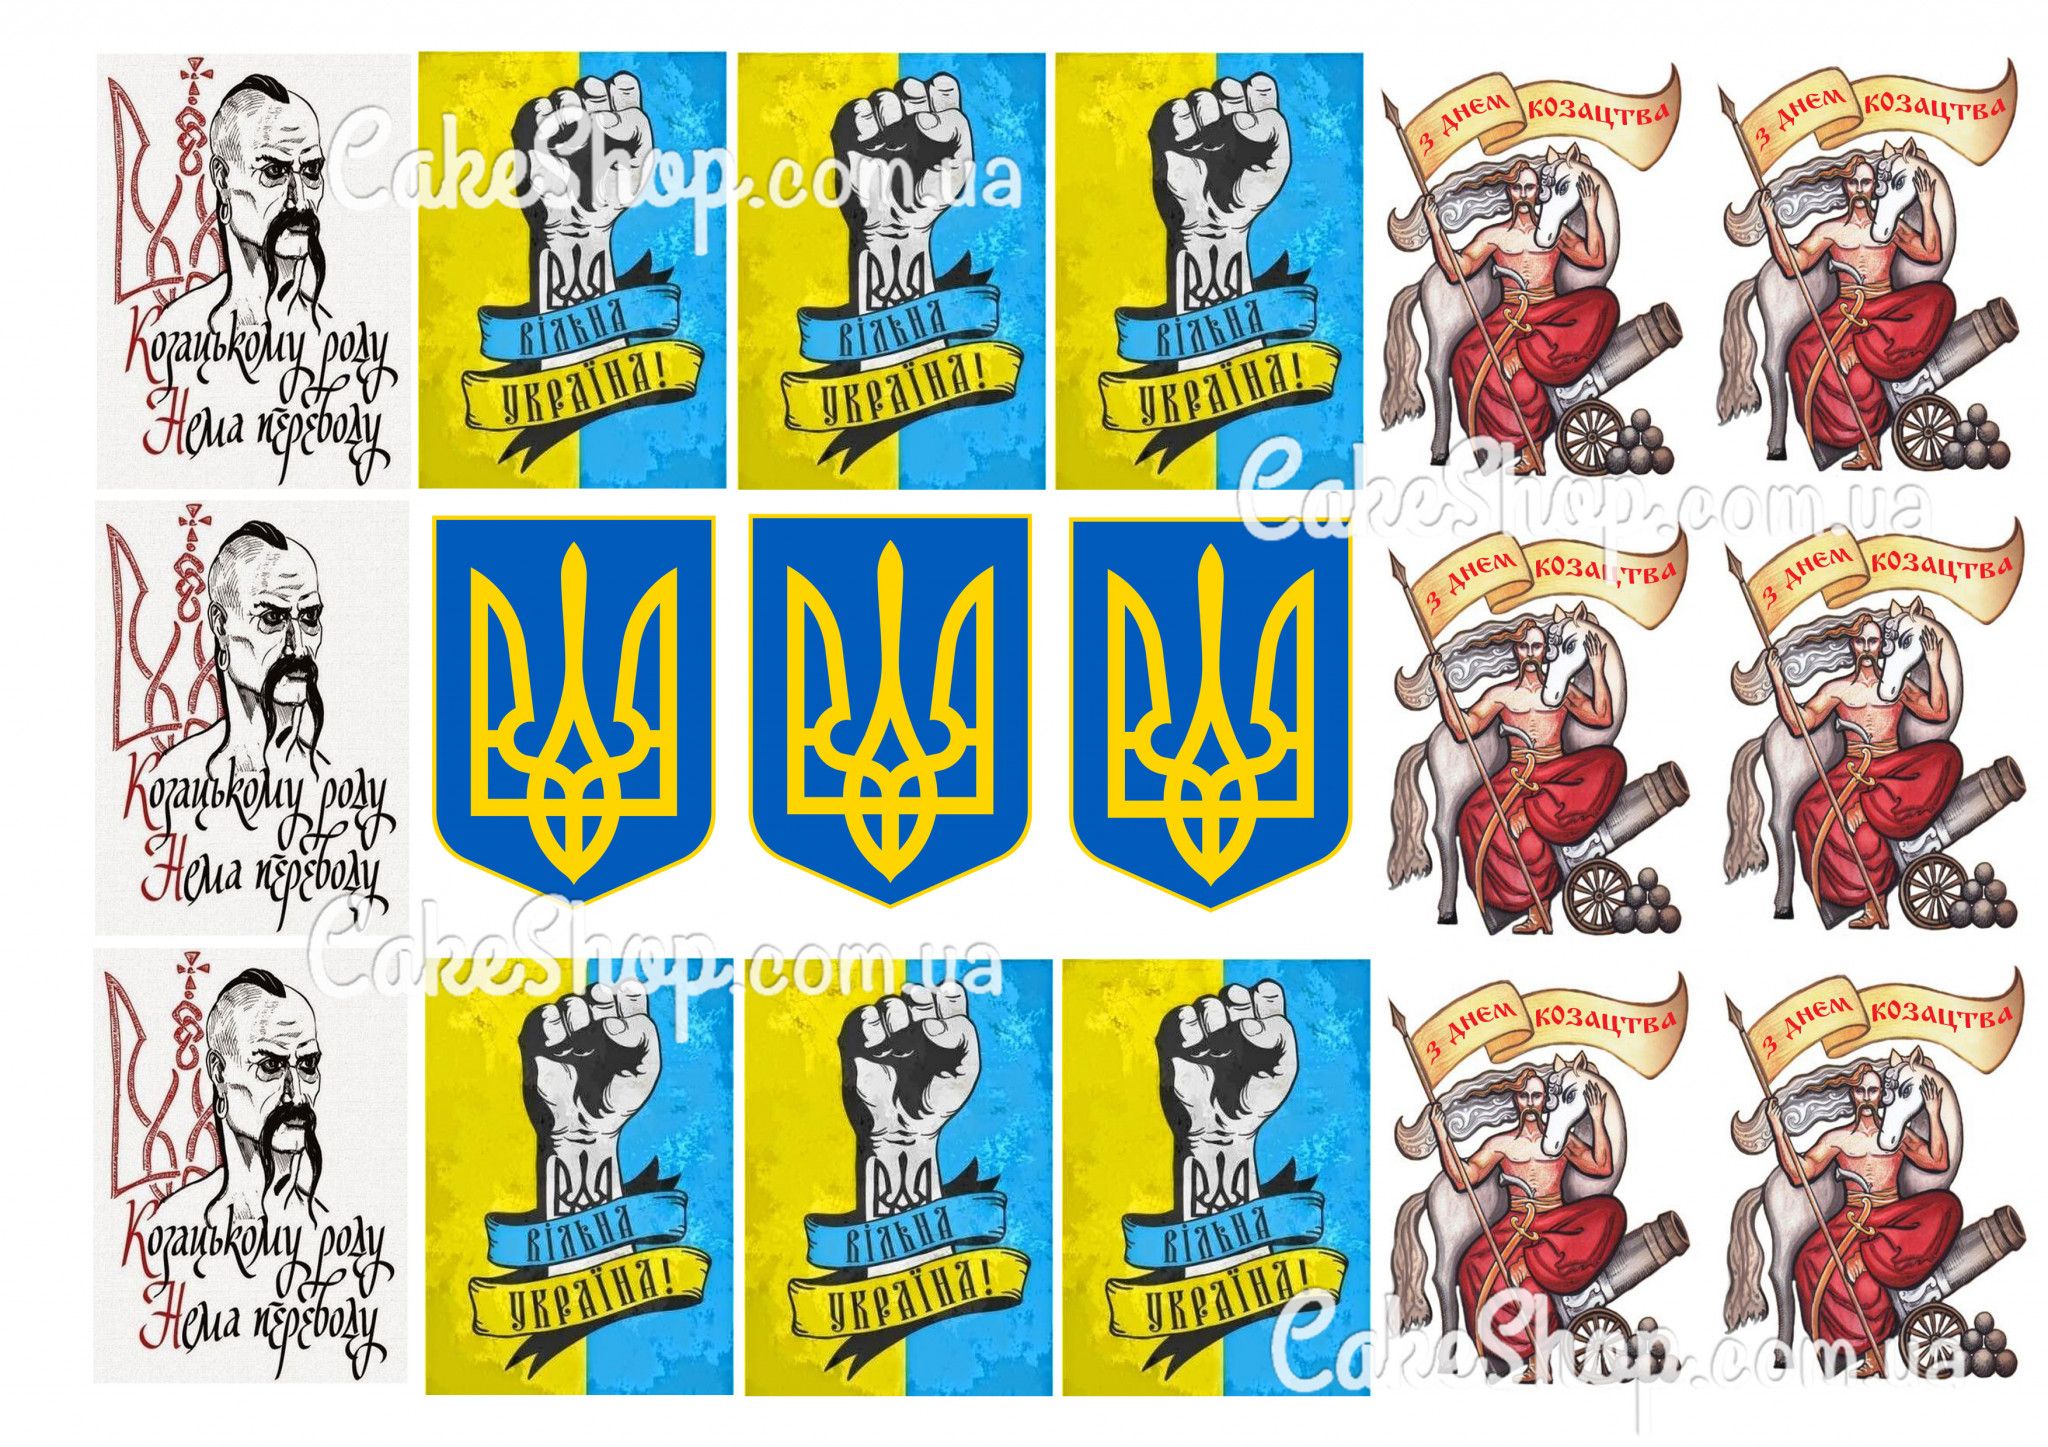 ⋗ Вафельная картинка Казацкому роду купить в Украине ➛ CakeShop.com.ua, фото